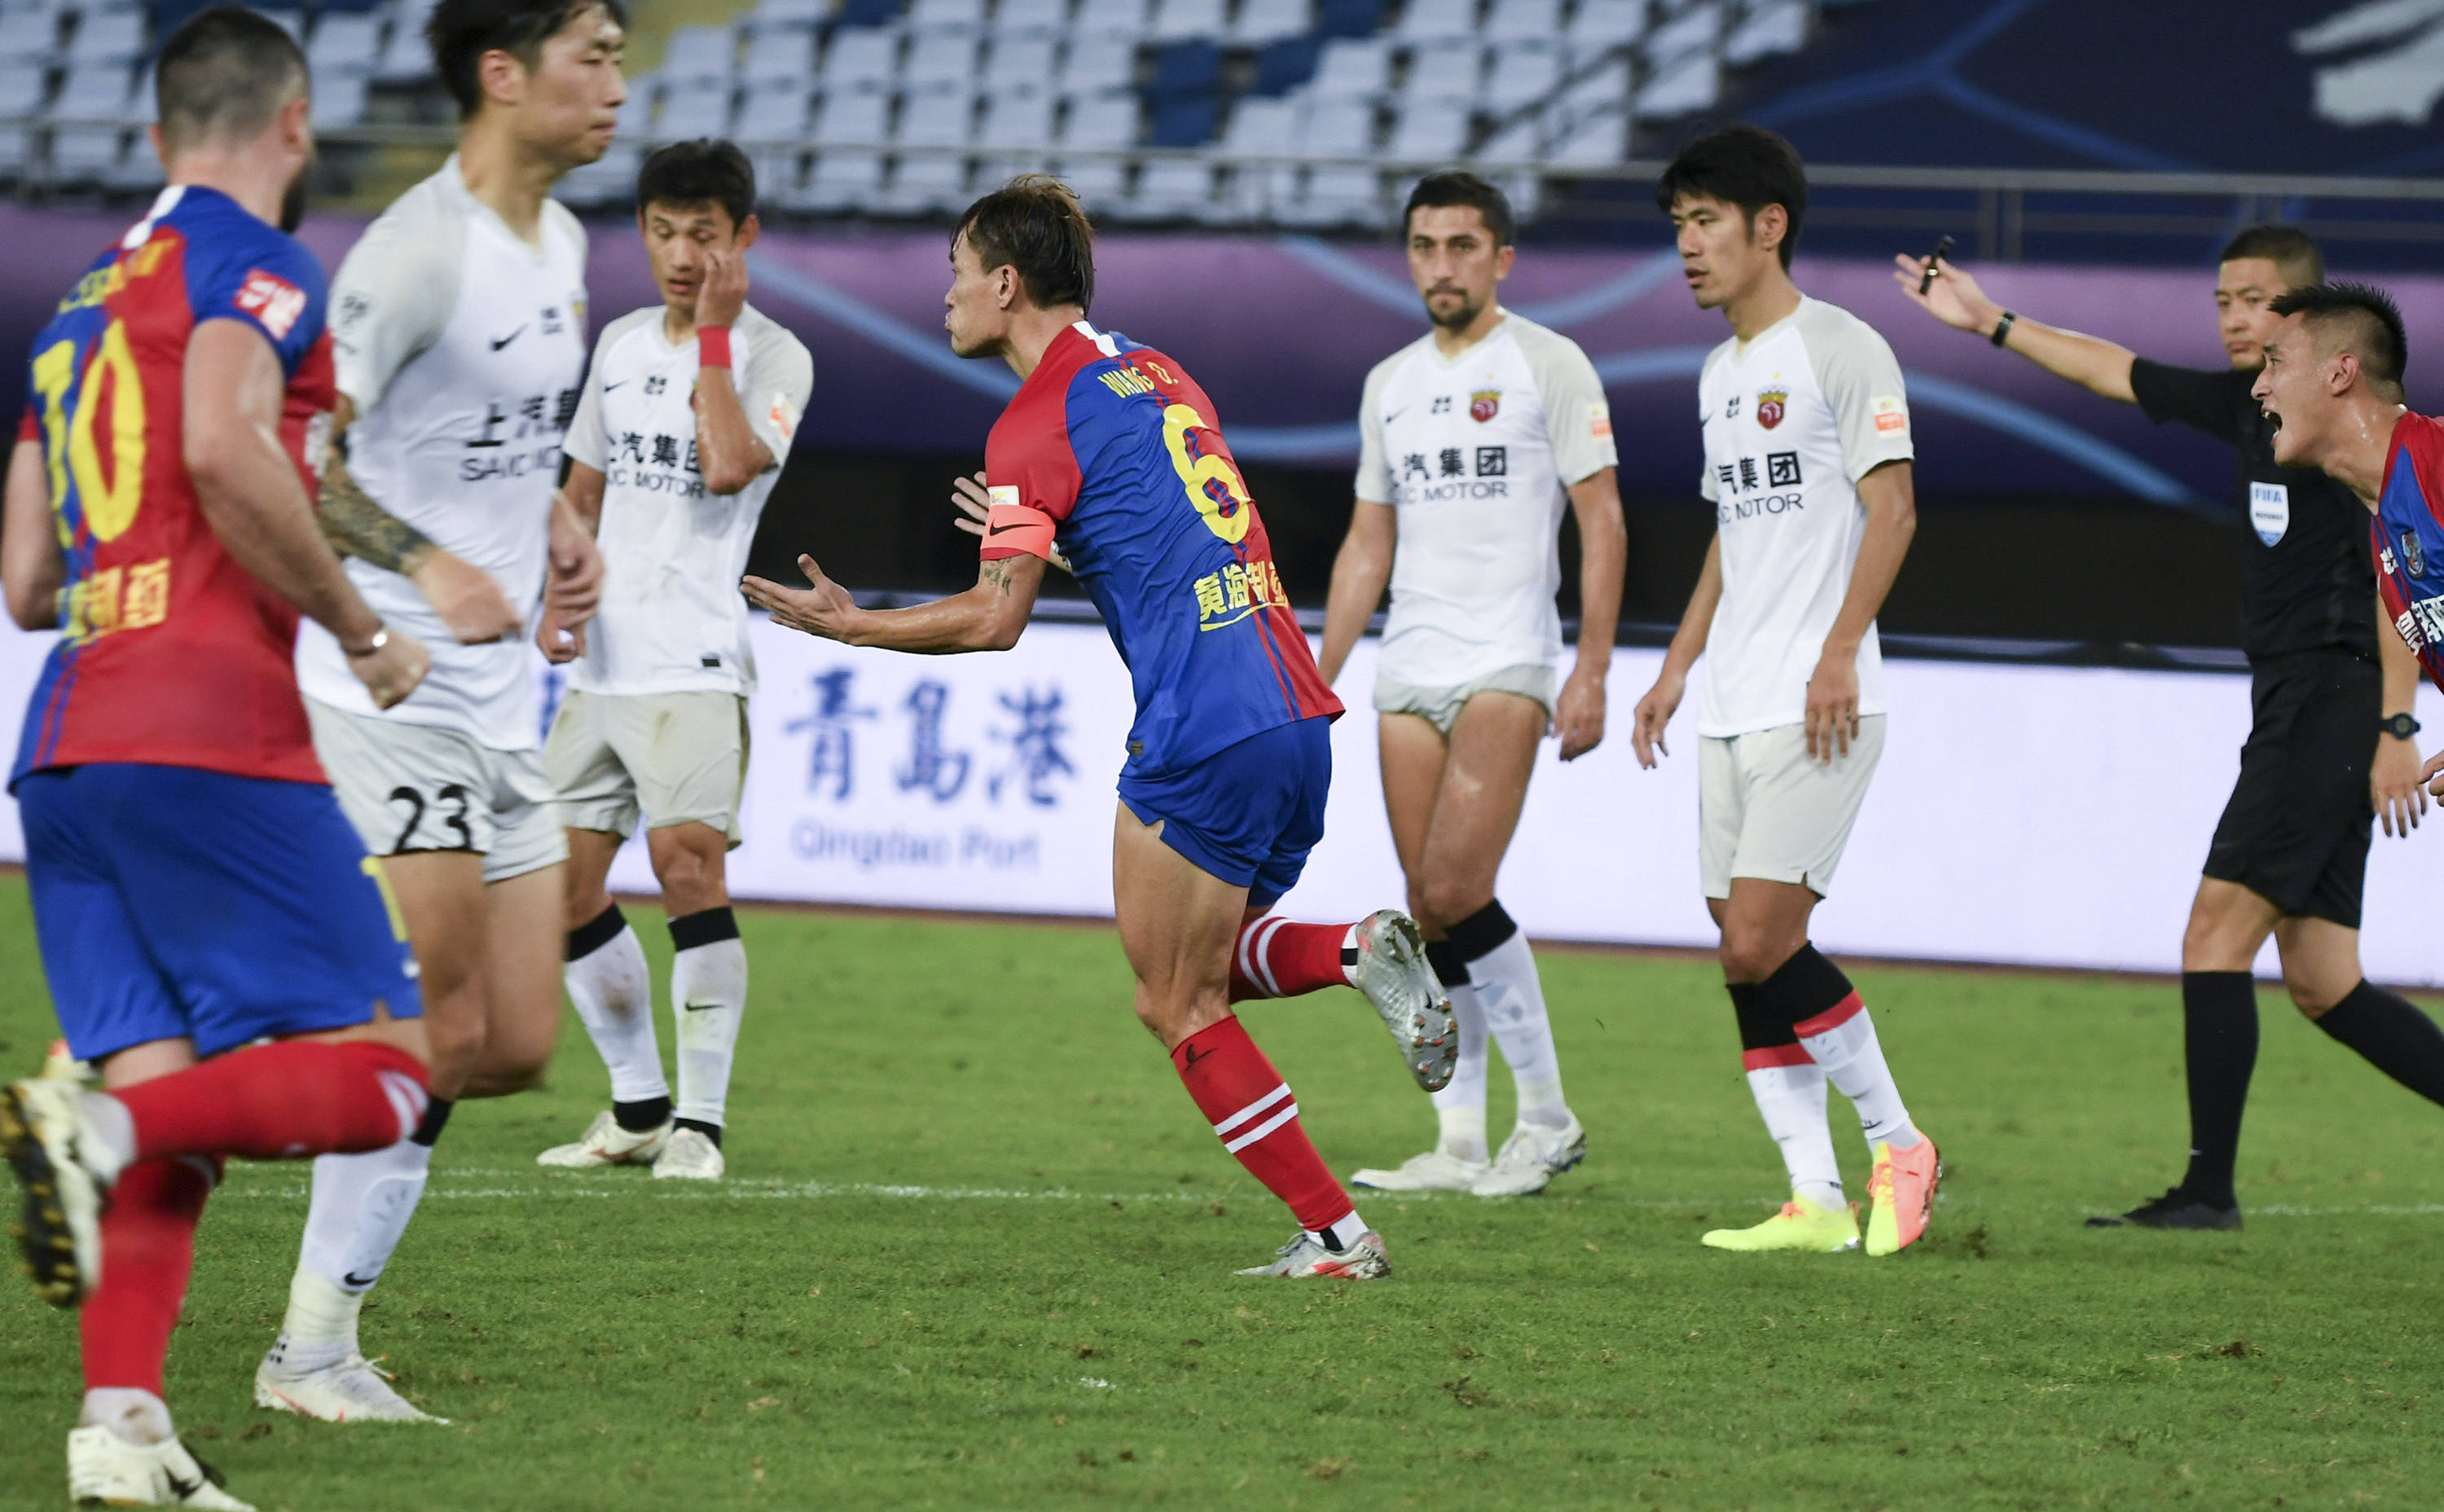 青岛足球俱乐部正式致函市足球运动管理中心退出中国职业足球联赛(图)